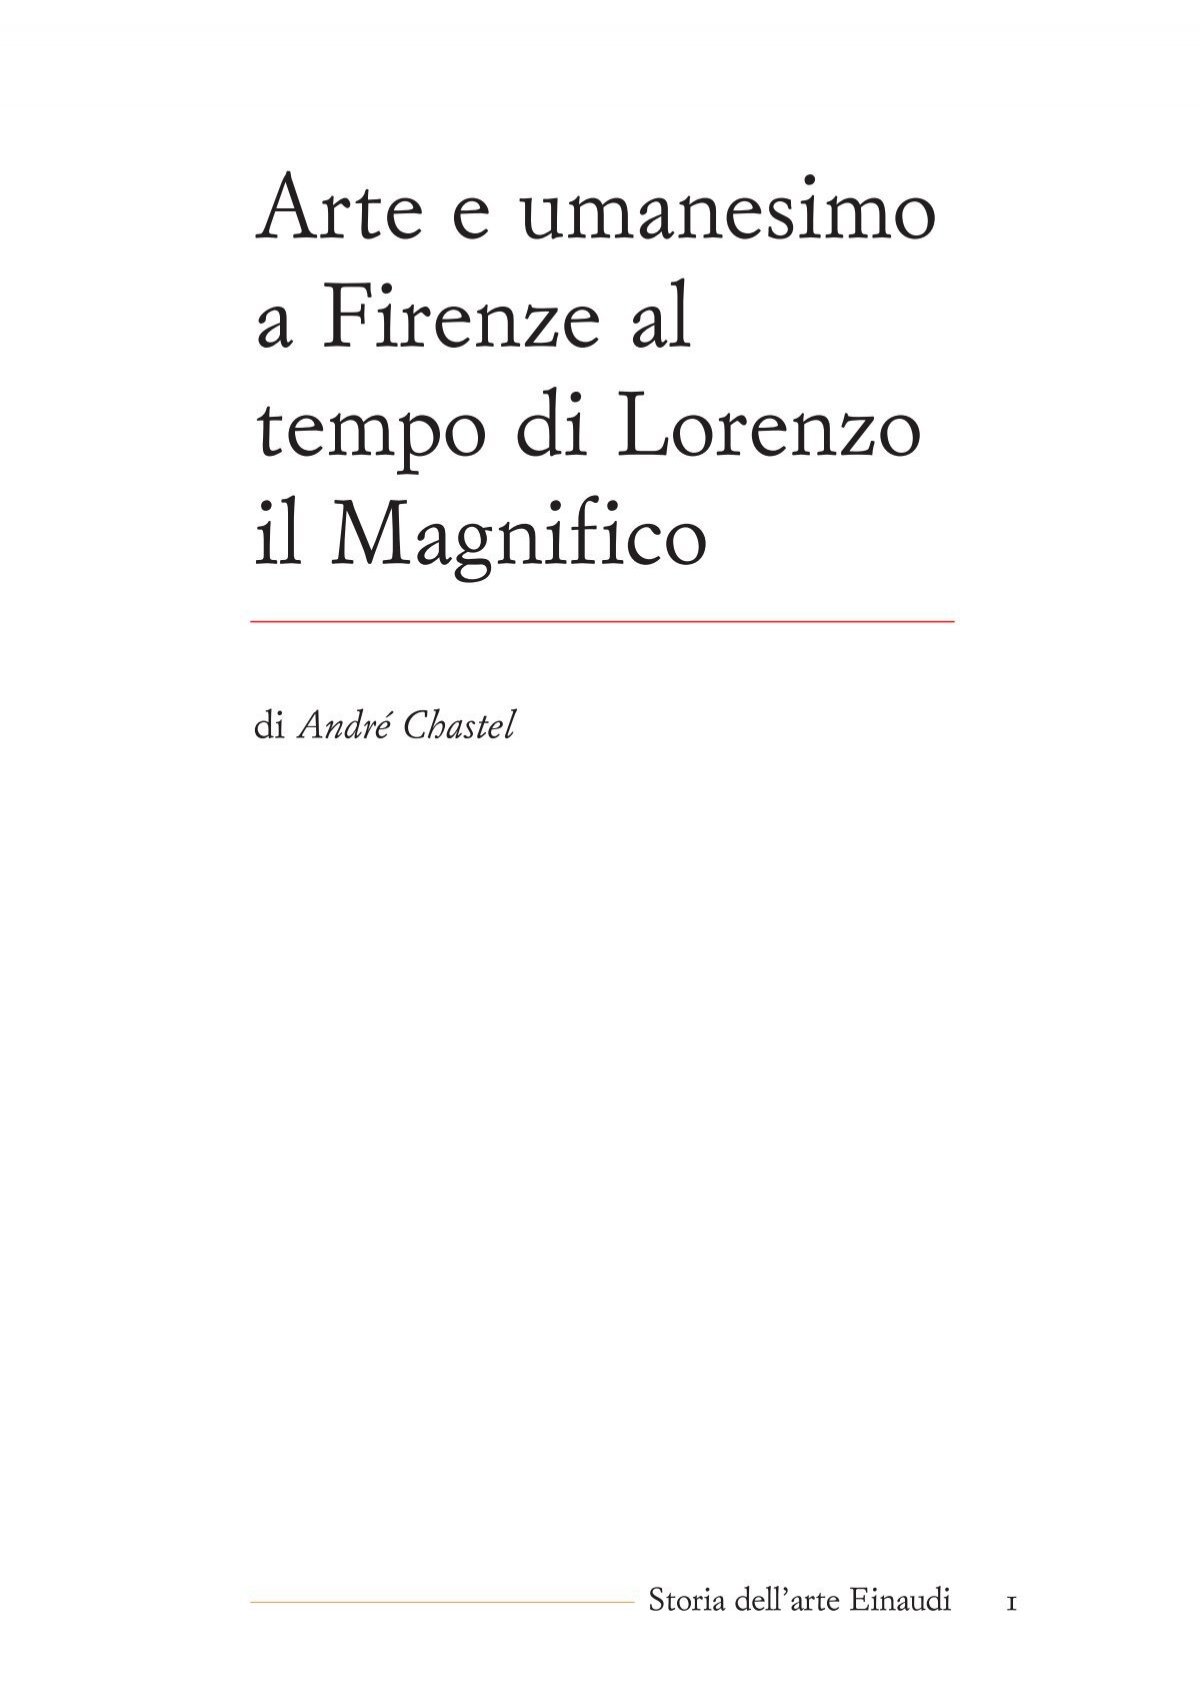 arte_ e_umanesimo_a_firenze.pdf - Artleo.It